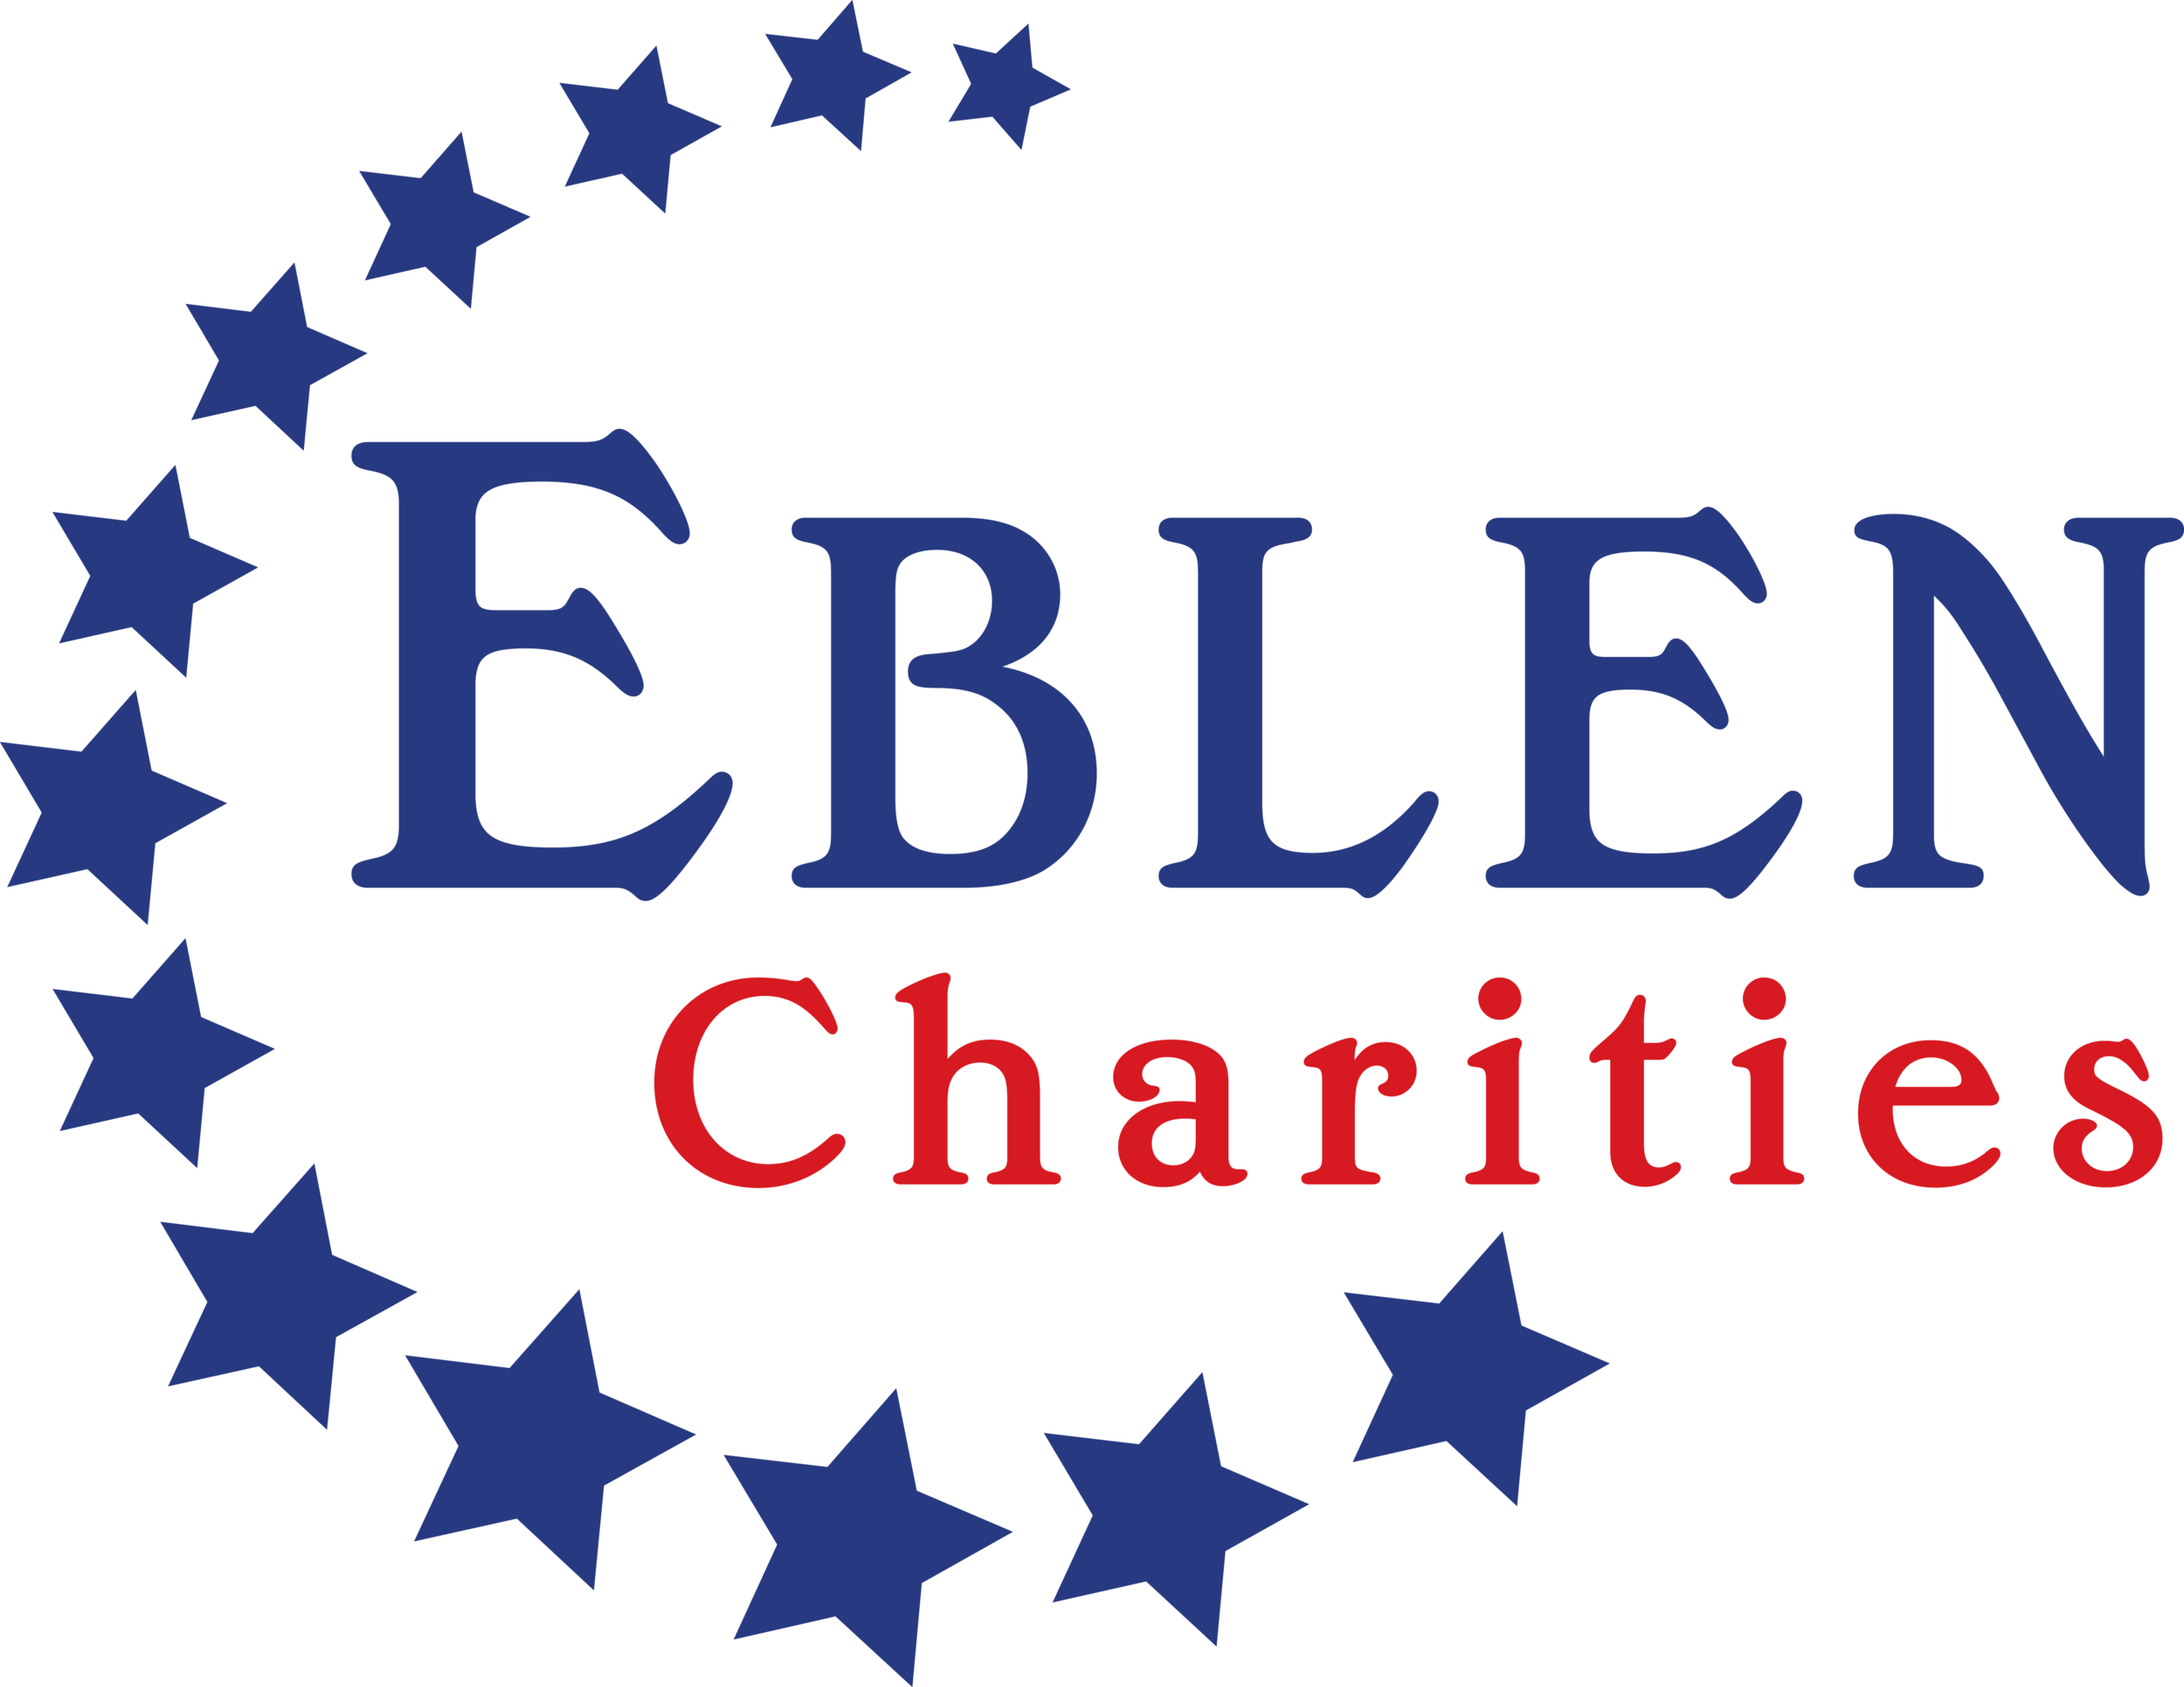 eblen charities